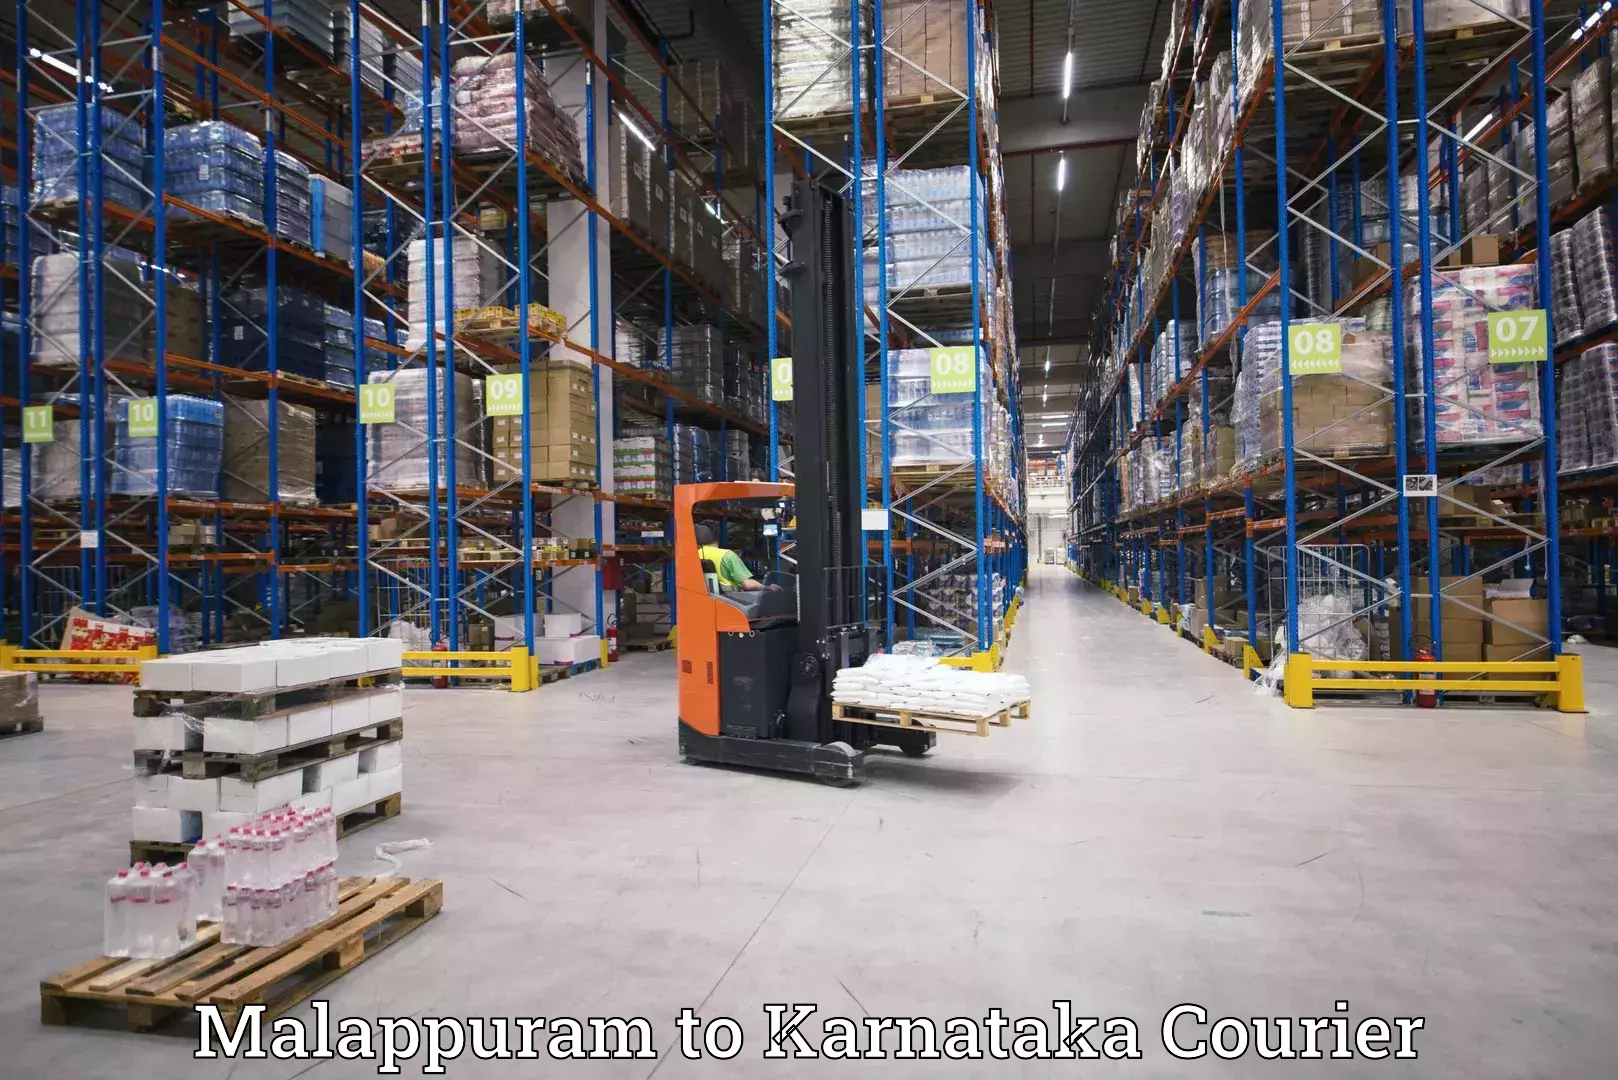 24-hour courier services Malappuram to Kodagu